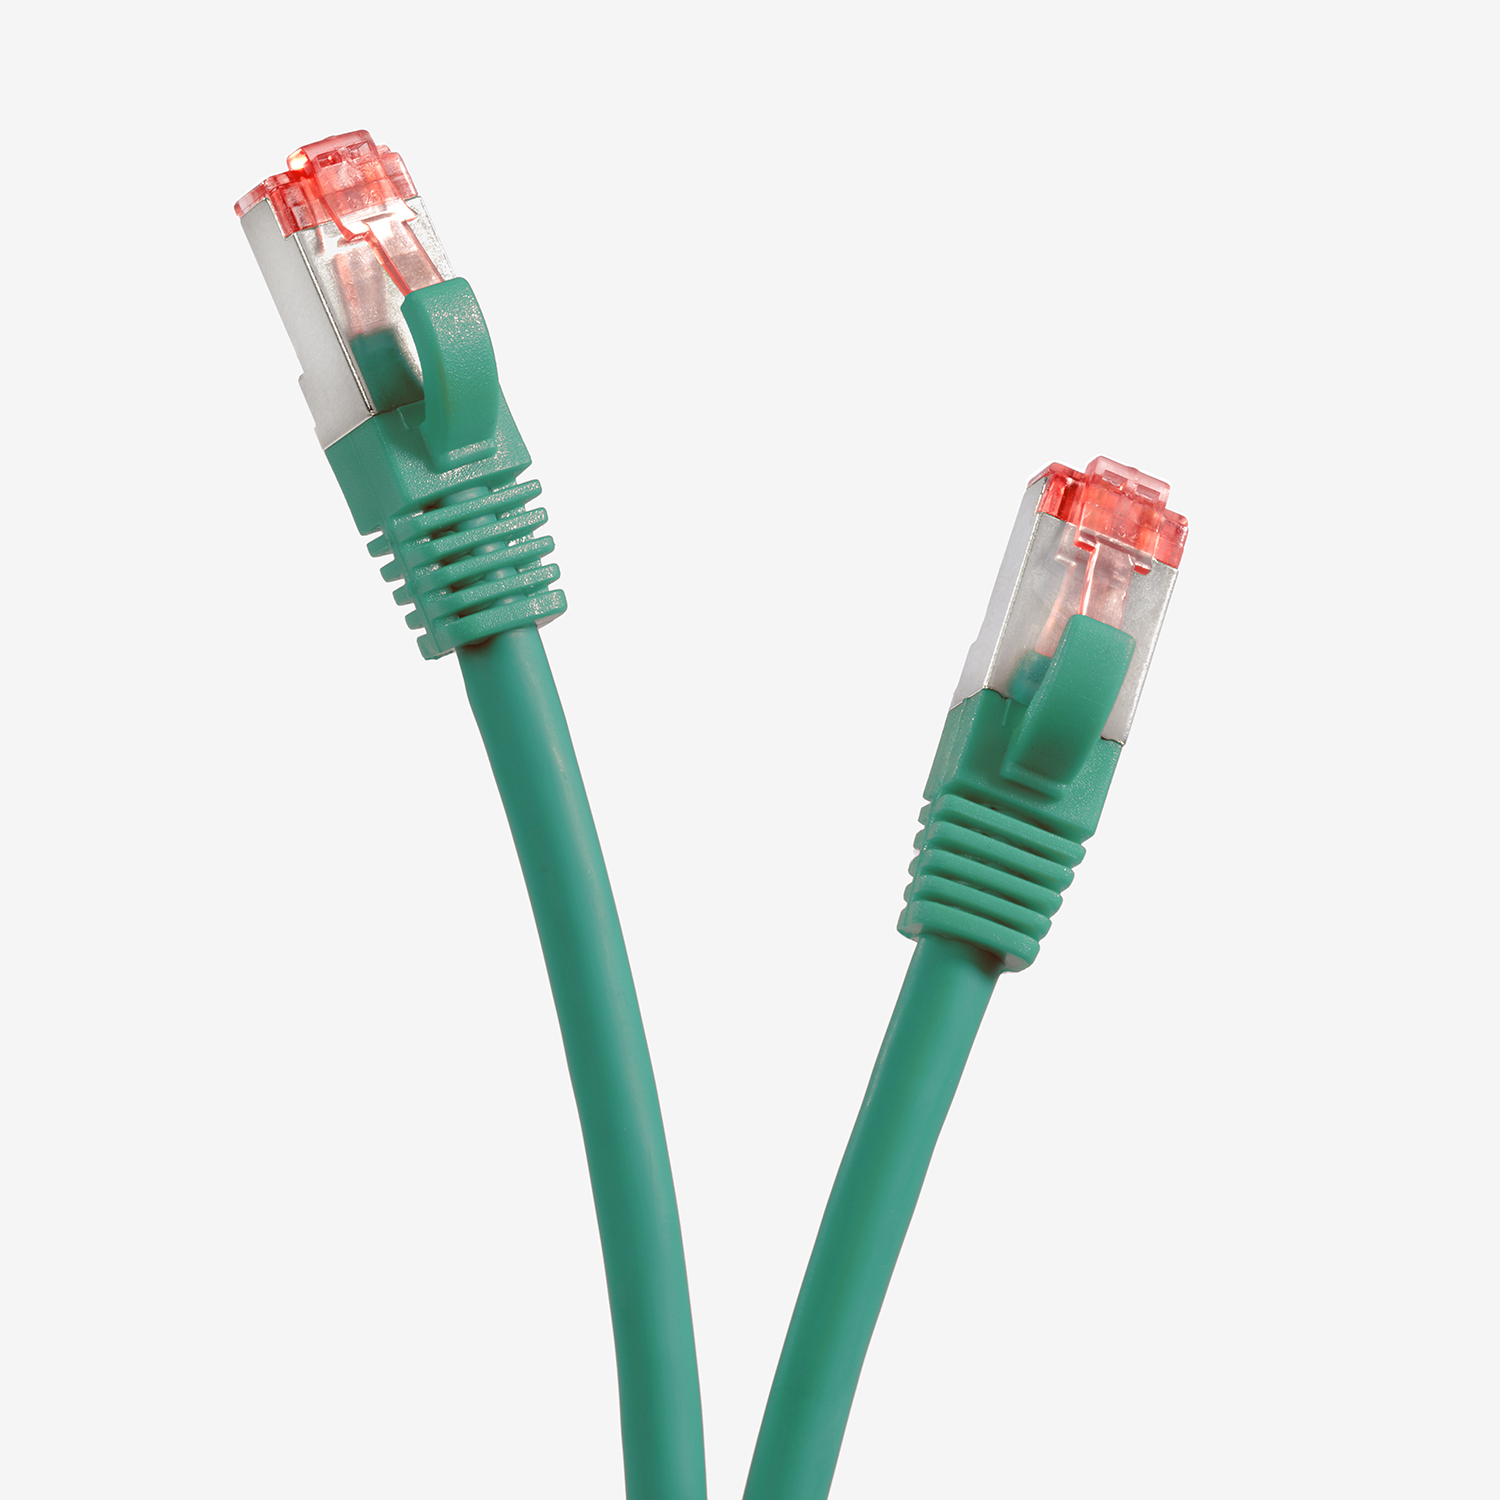 TPFNET 2m / S/FTP Netzwerkkabel, 2 m Netzwerkkabel Patchkabel 1000Mbit, grün